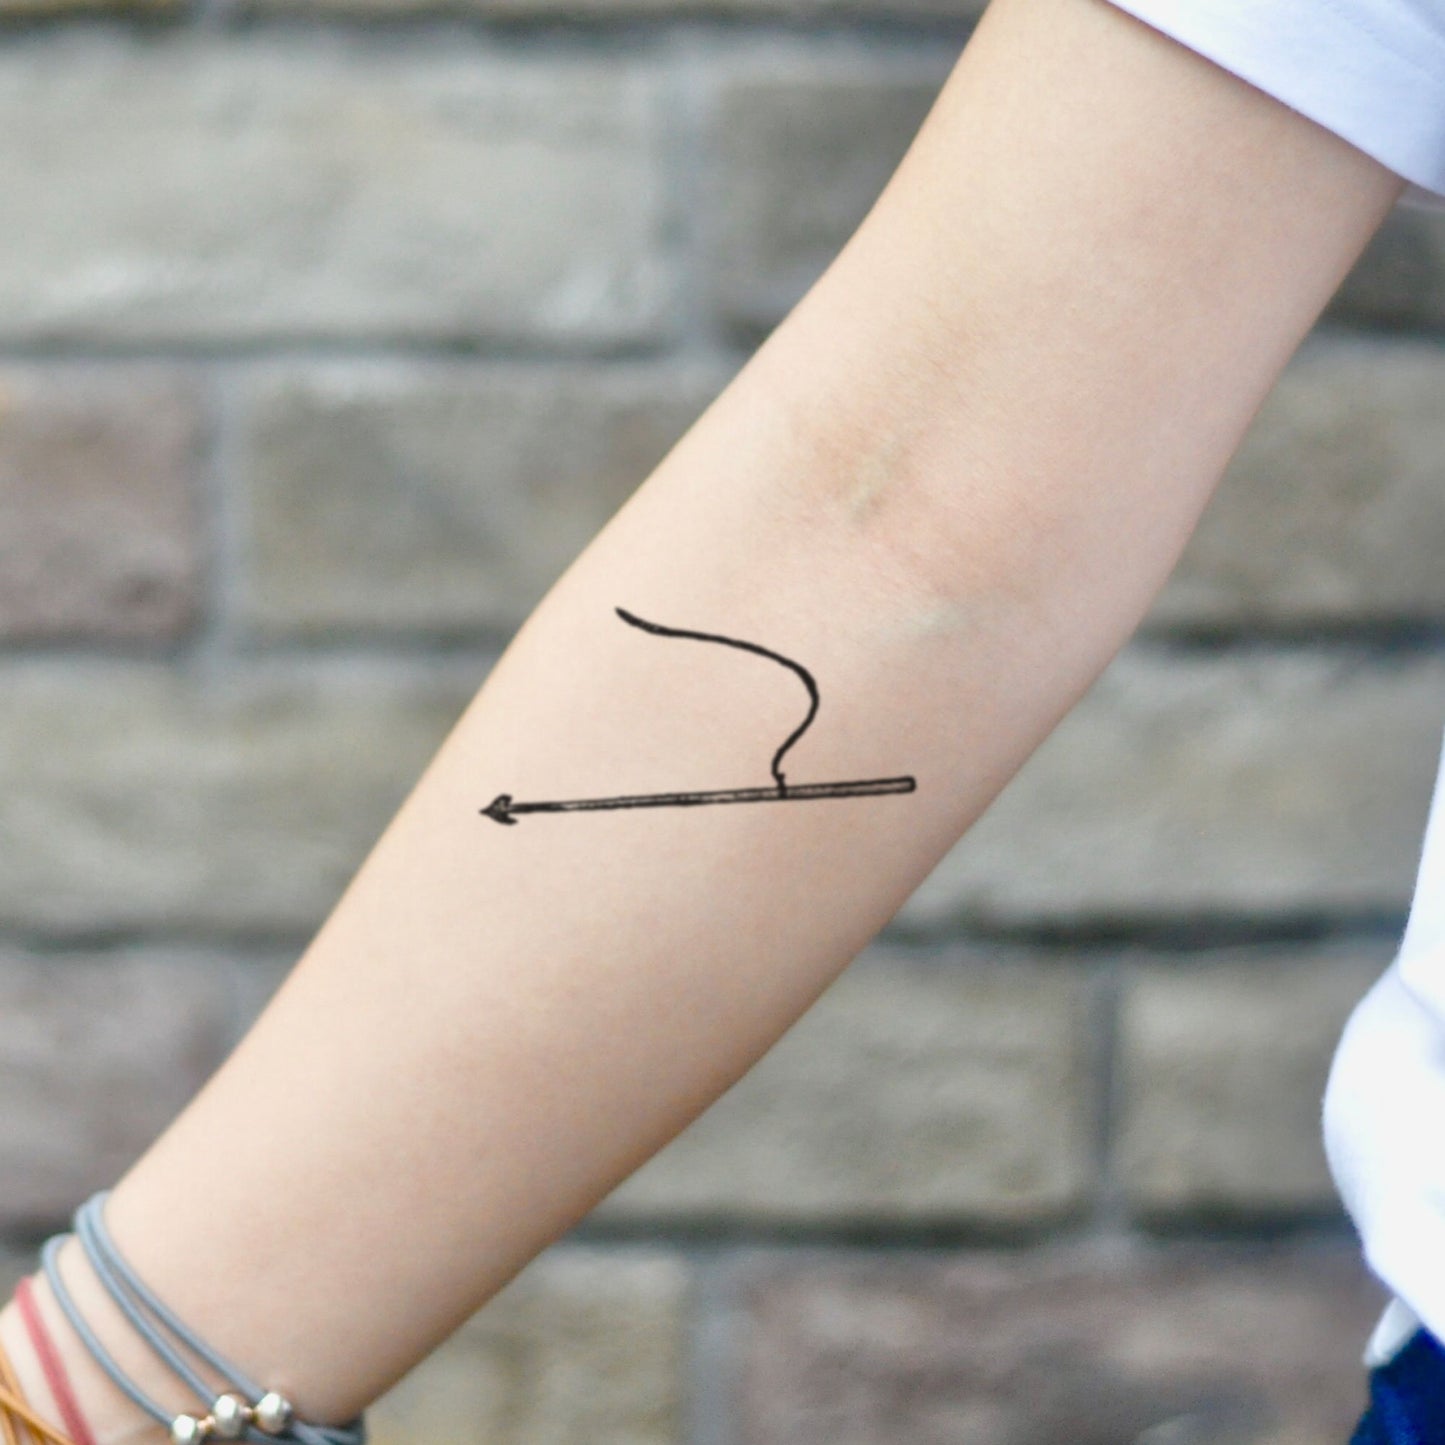 fake small harpoon minimalist temporary tattoo sticker design idea on inner arm